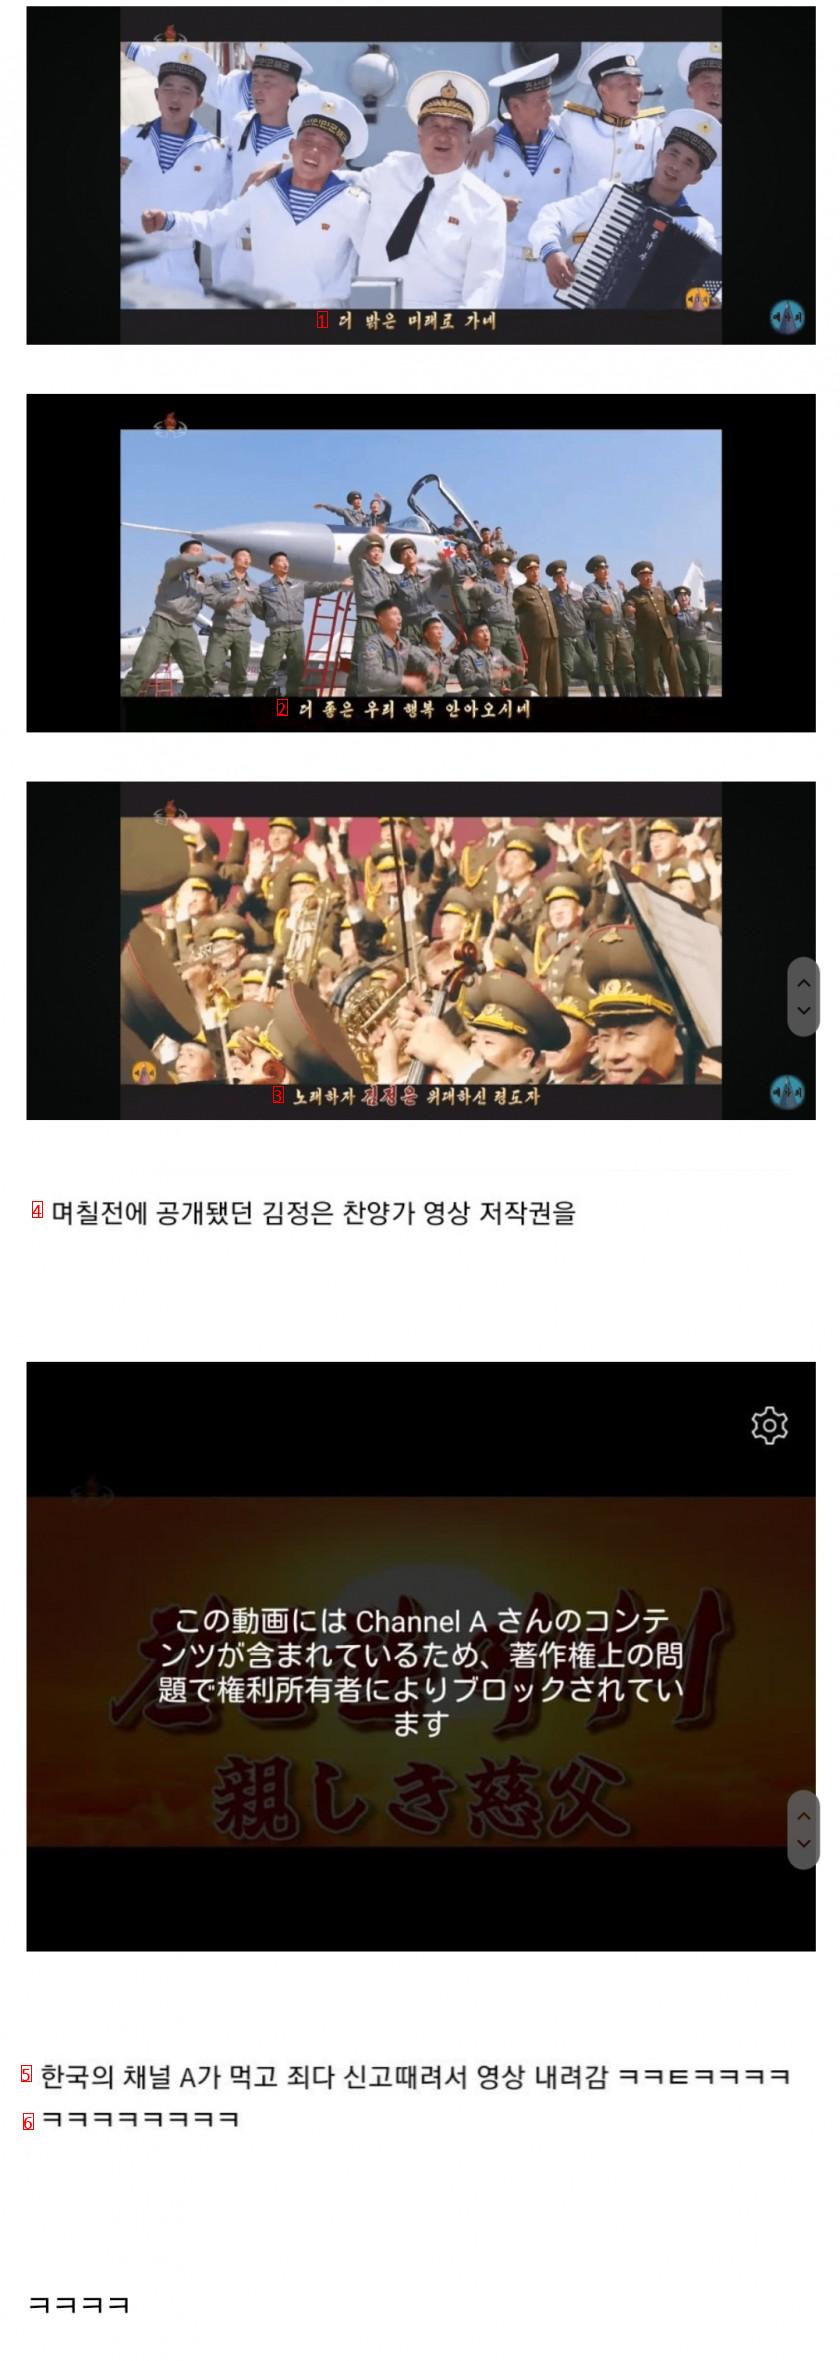 미쳐버린 북한 유튜브 근황